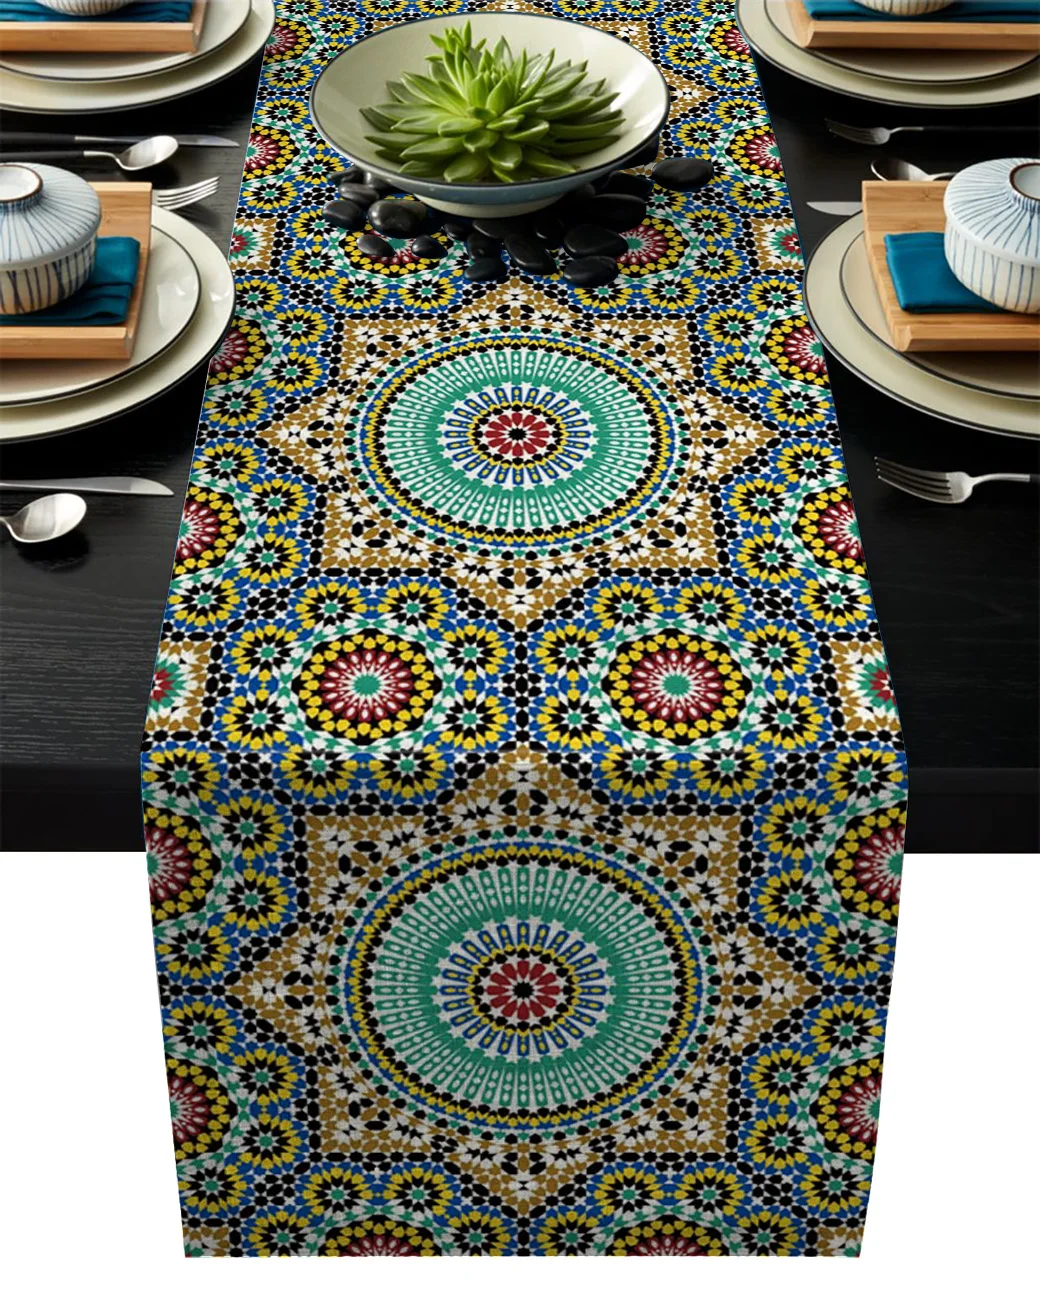 Camino de mesa con flores de Marruecos, caminos de mesa coloridos, Islam, arabesco, para cocina, cena, fiesta, boda, decoración de eventos